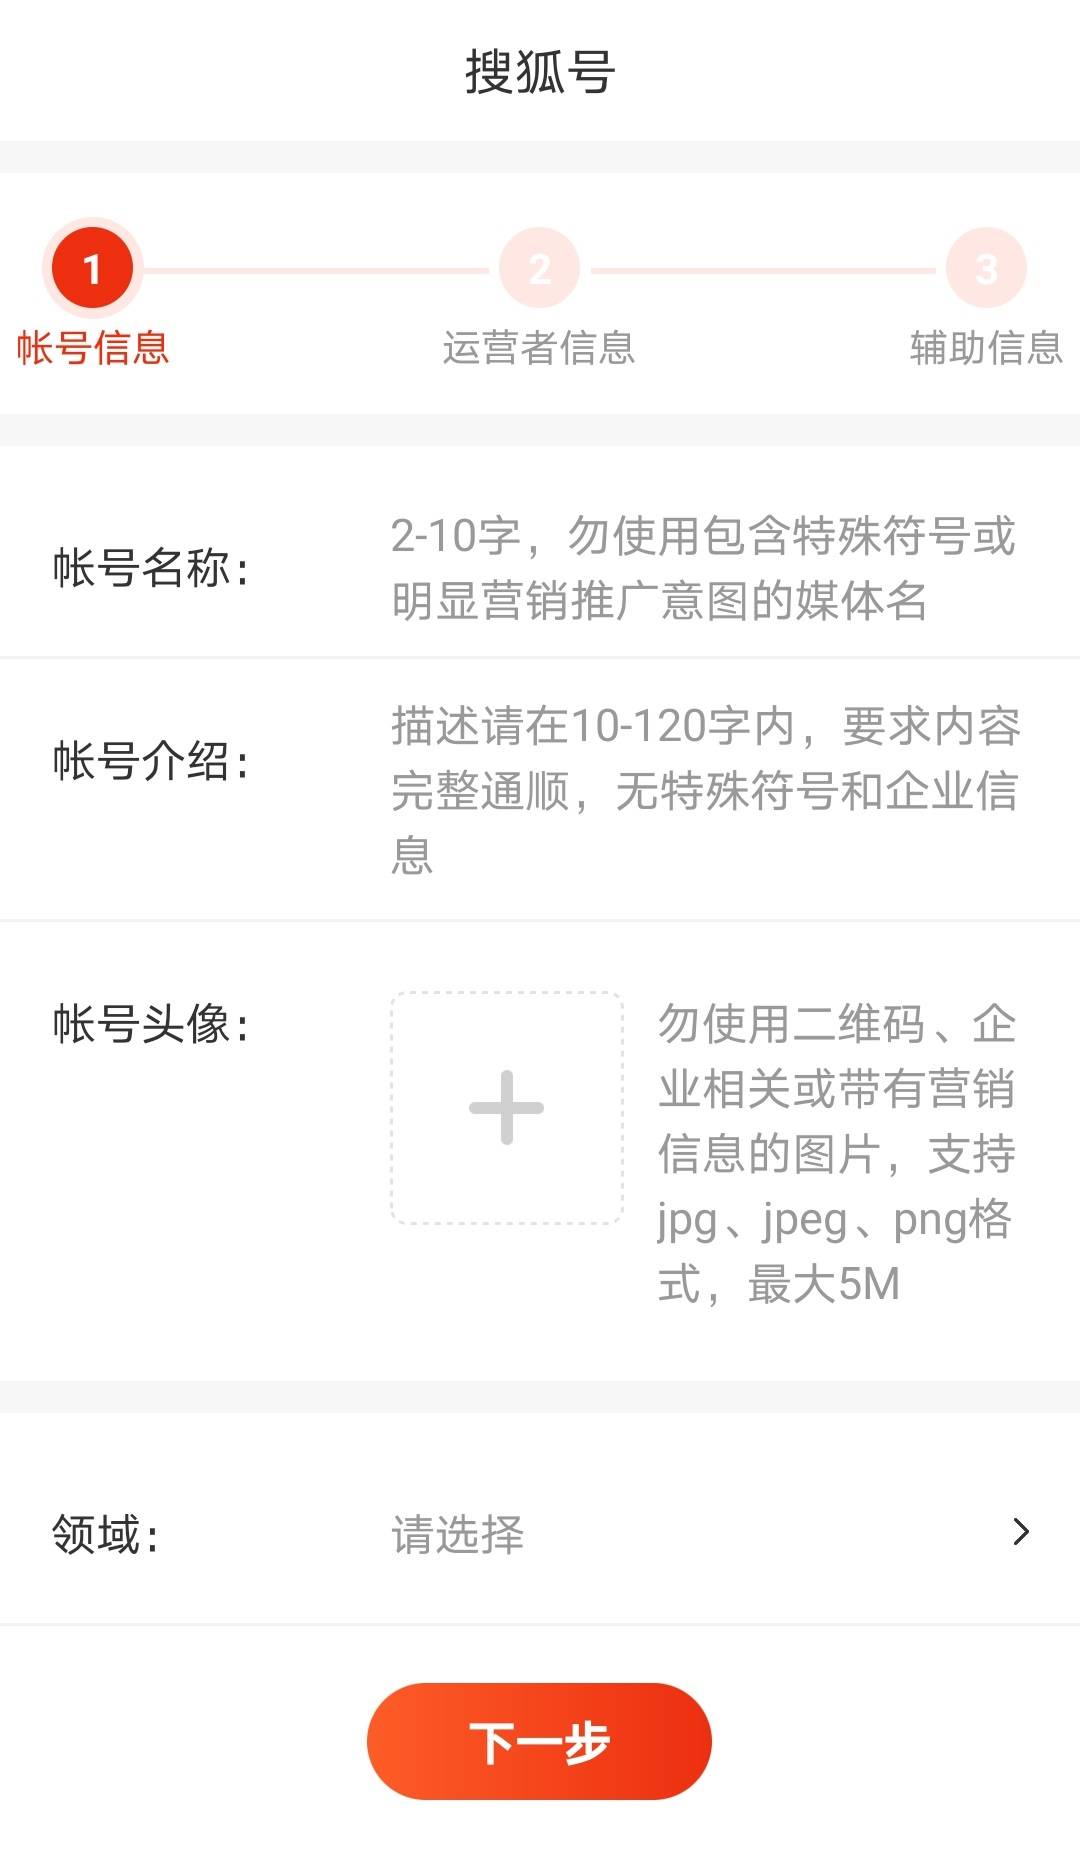 搜狐新闻客户端使用方法搜狐新闻客户端进入搜狐号平台